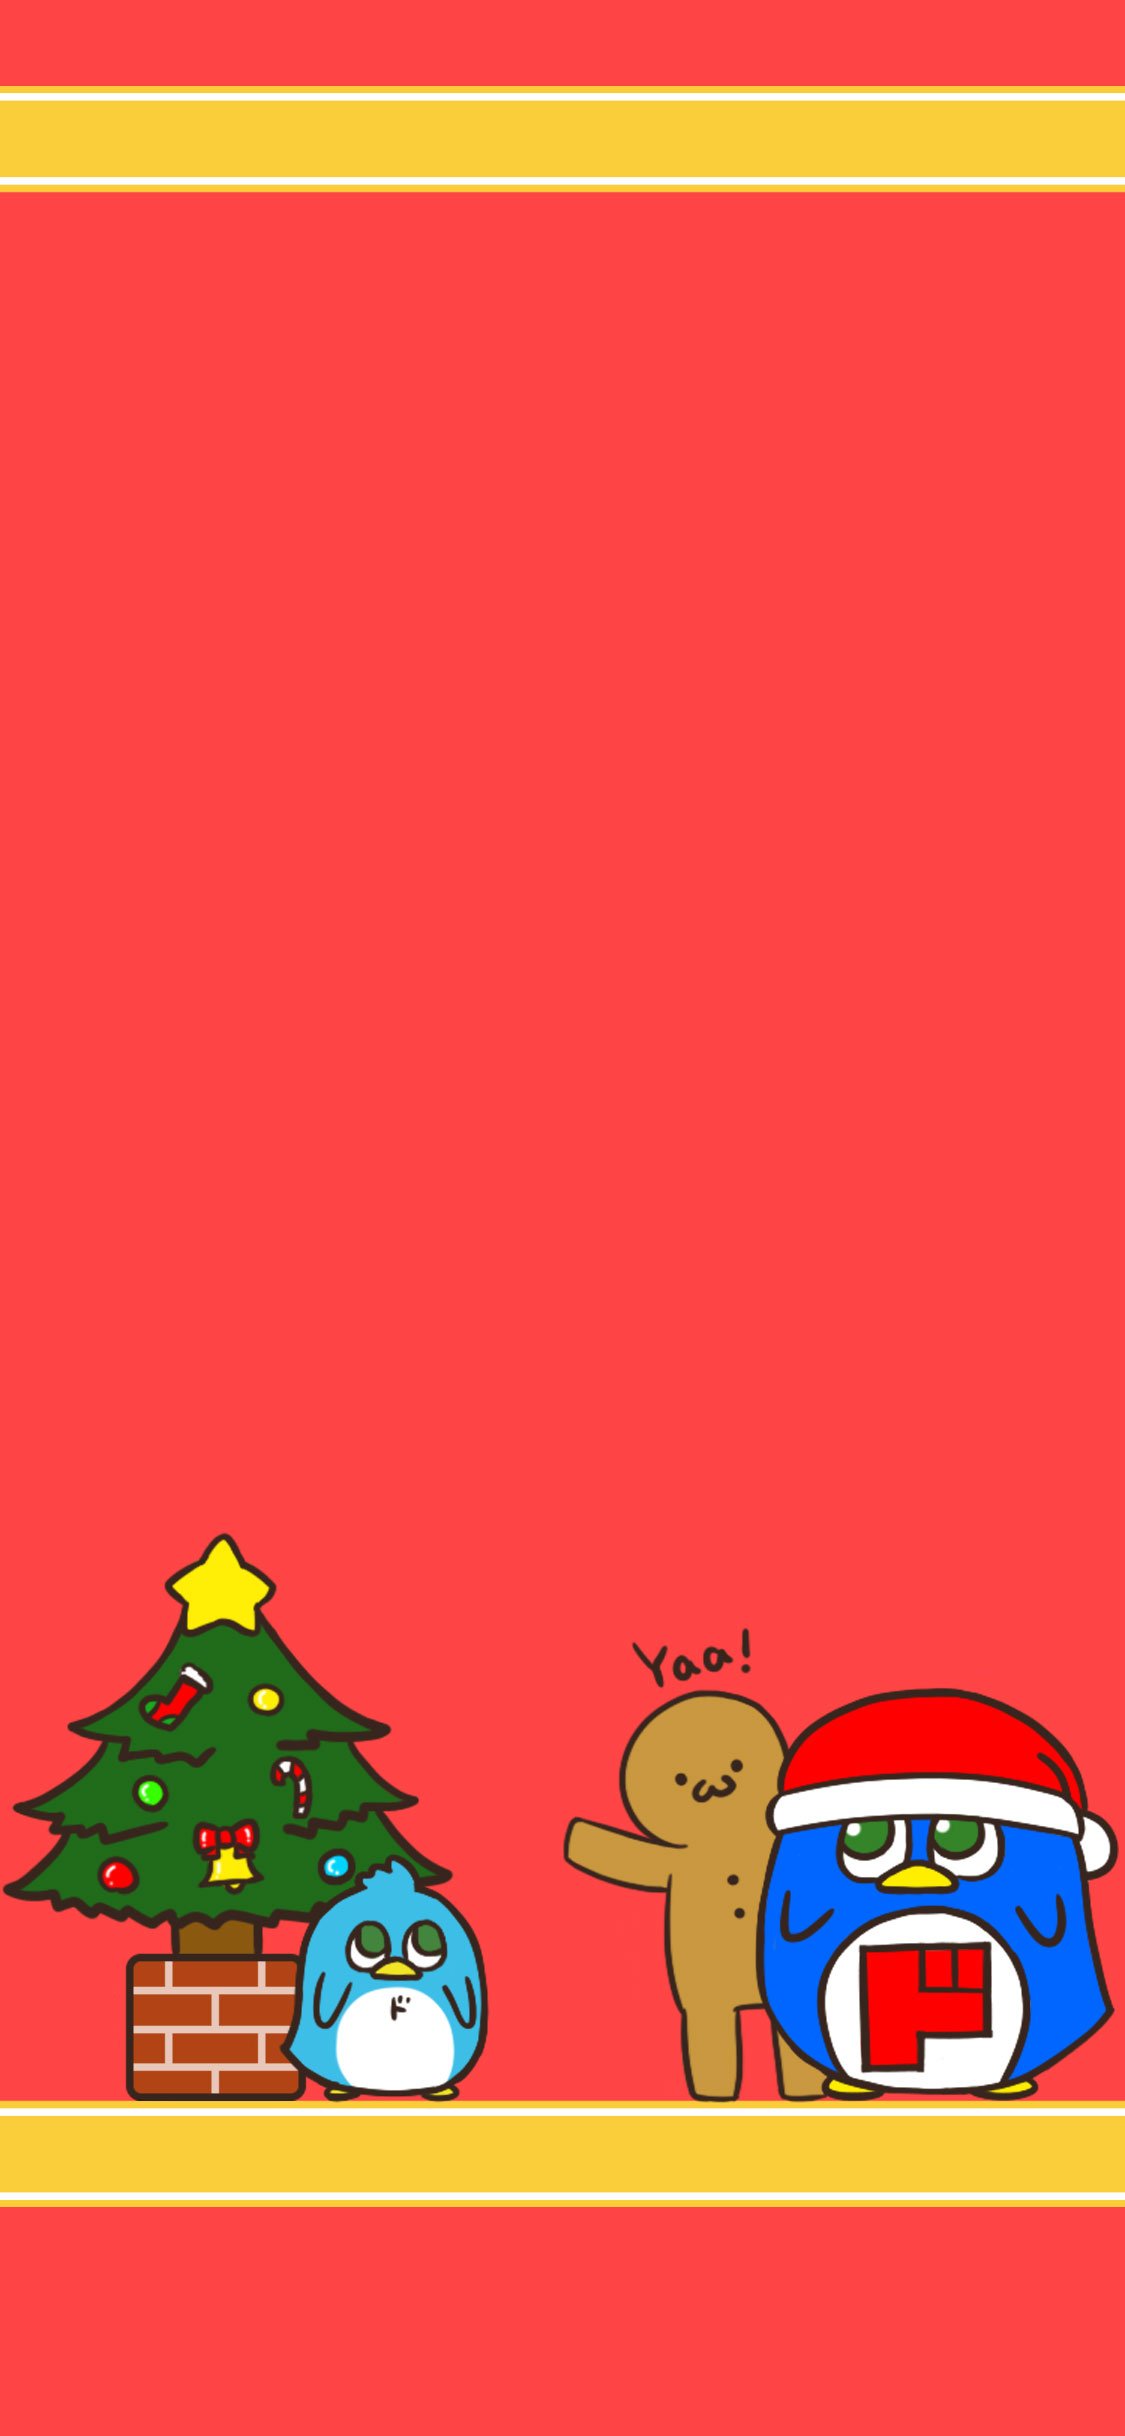 驚安の殿堂 ドン キホーテ クリスマスの壁紙作ってみた 8 1枚目はiphone6 7 8ユーザー推奨 2枚目はiphonexユーザー推奨 3枚目はandroidユーザー推奨 4枚目はpcユーザー推奨 12月開始のお知らせ 壁紙 クリスマス クリスマスツリー